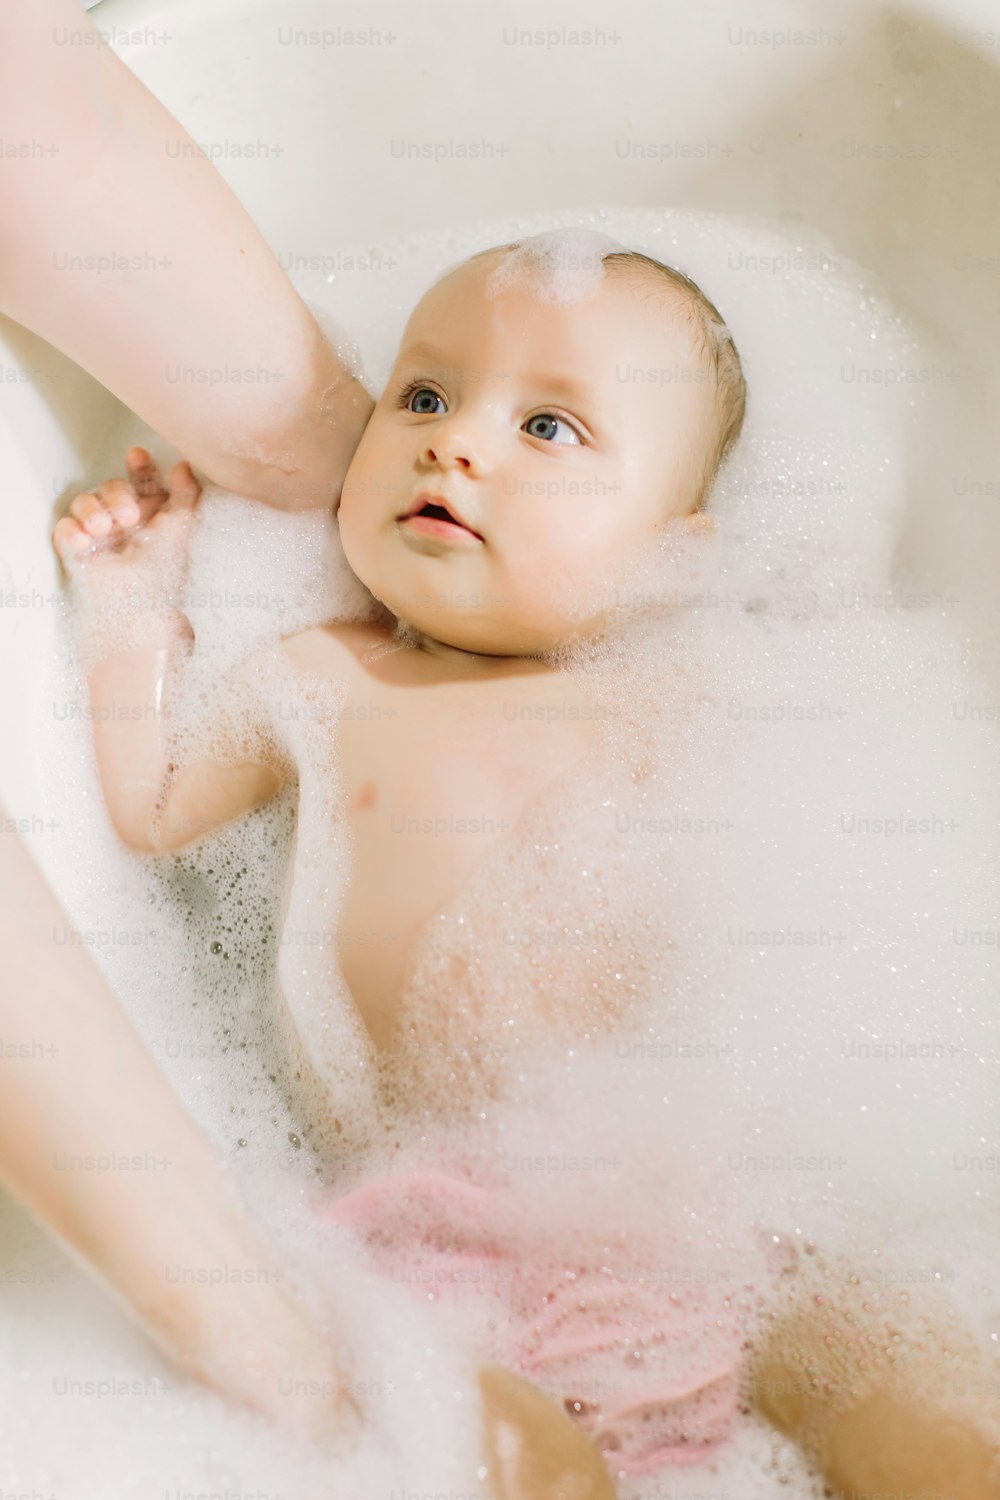 Bebé feliz riendo tomando un baño jugando con burbujas de espuma. Niño pequeño en una bañera. Lavado y baño de bebés. Higiene y cuidado de los niños pequeños. Baño del bebé recién nacido